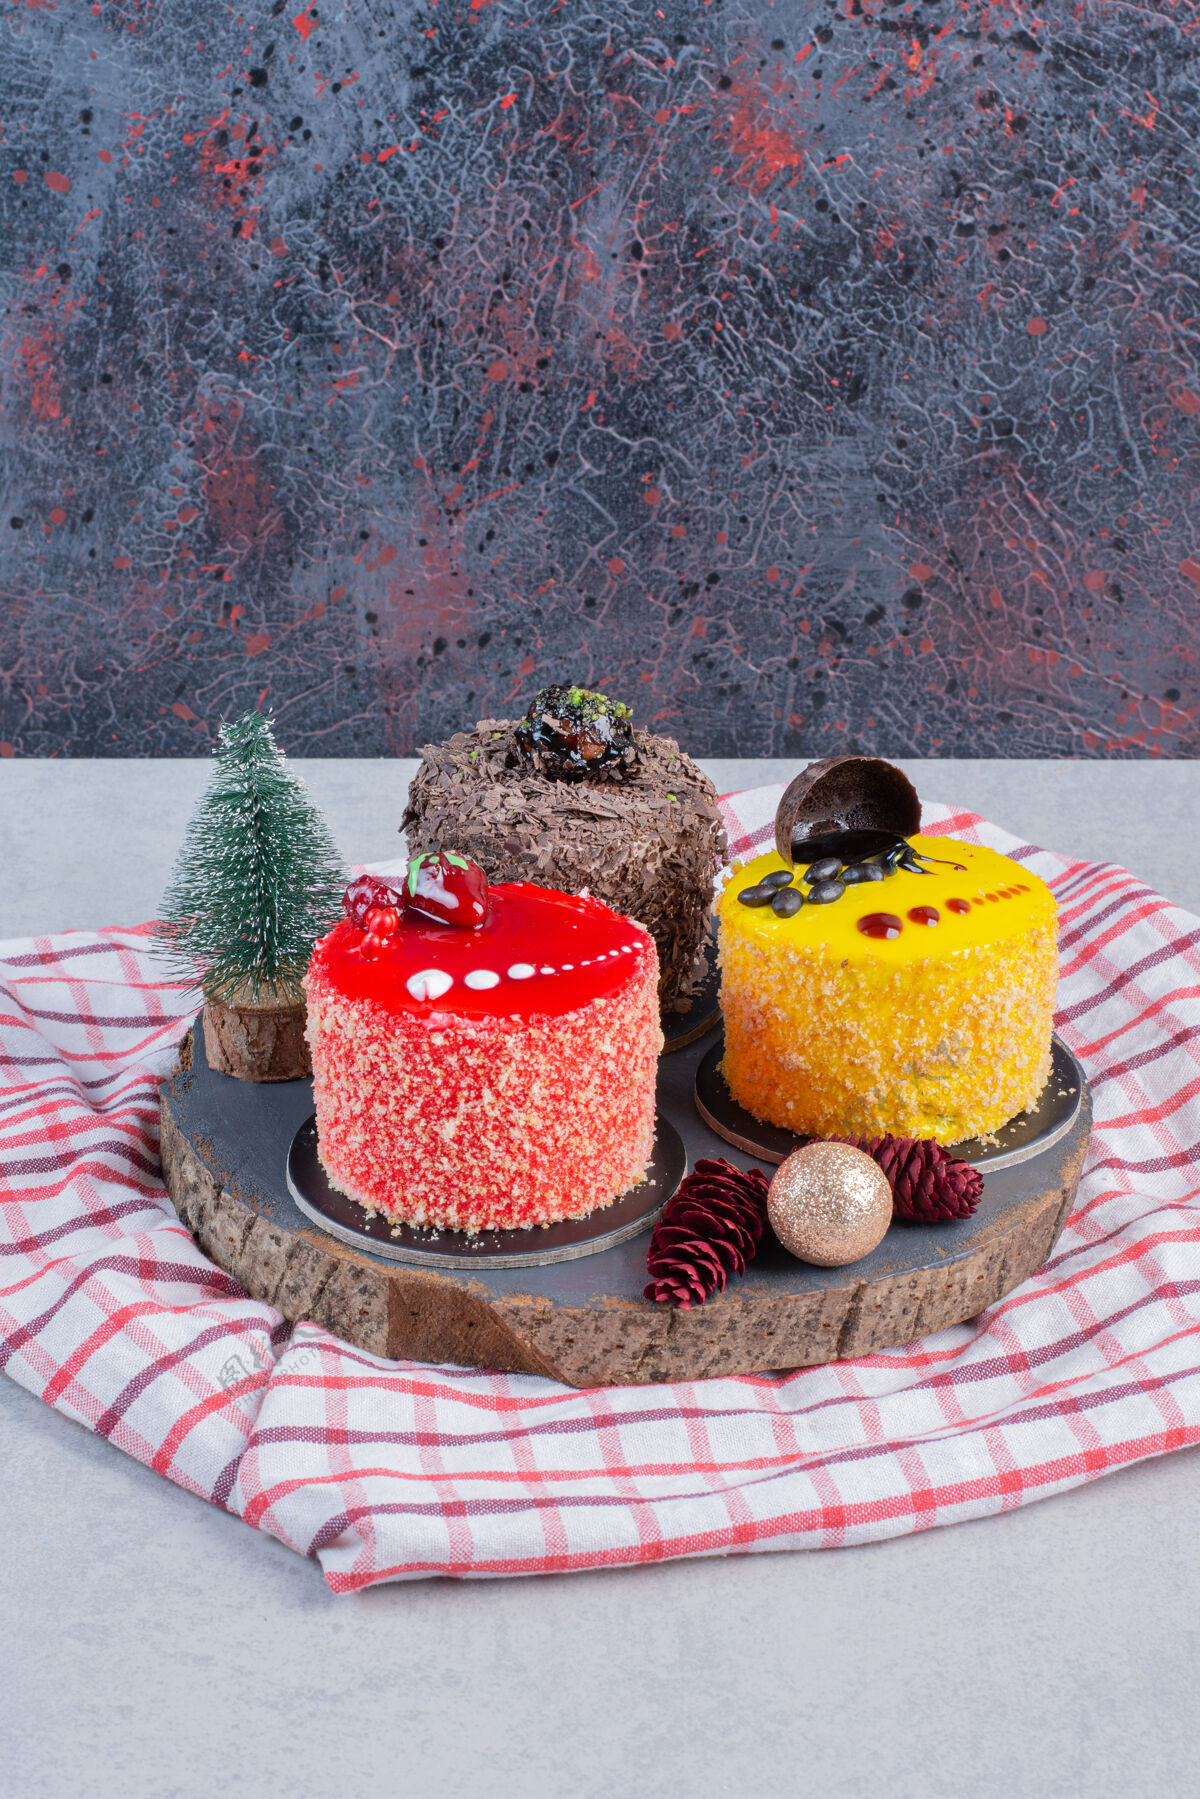 切片各种各样的蛋糕和圣诞装饰品放在深色的木板上蛋糕采购产品圣诞节圣诞饰品